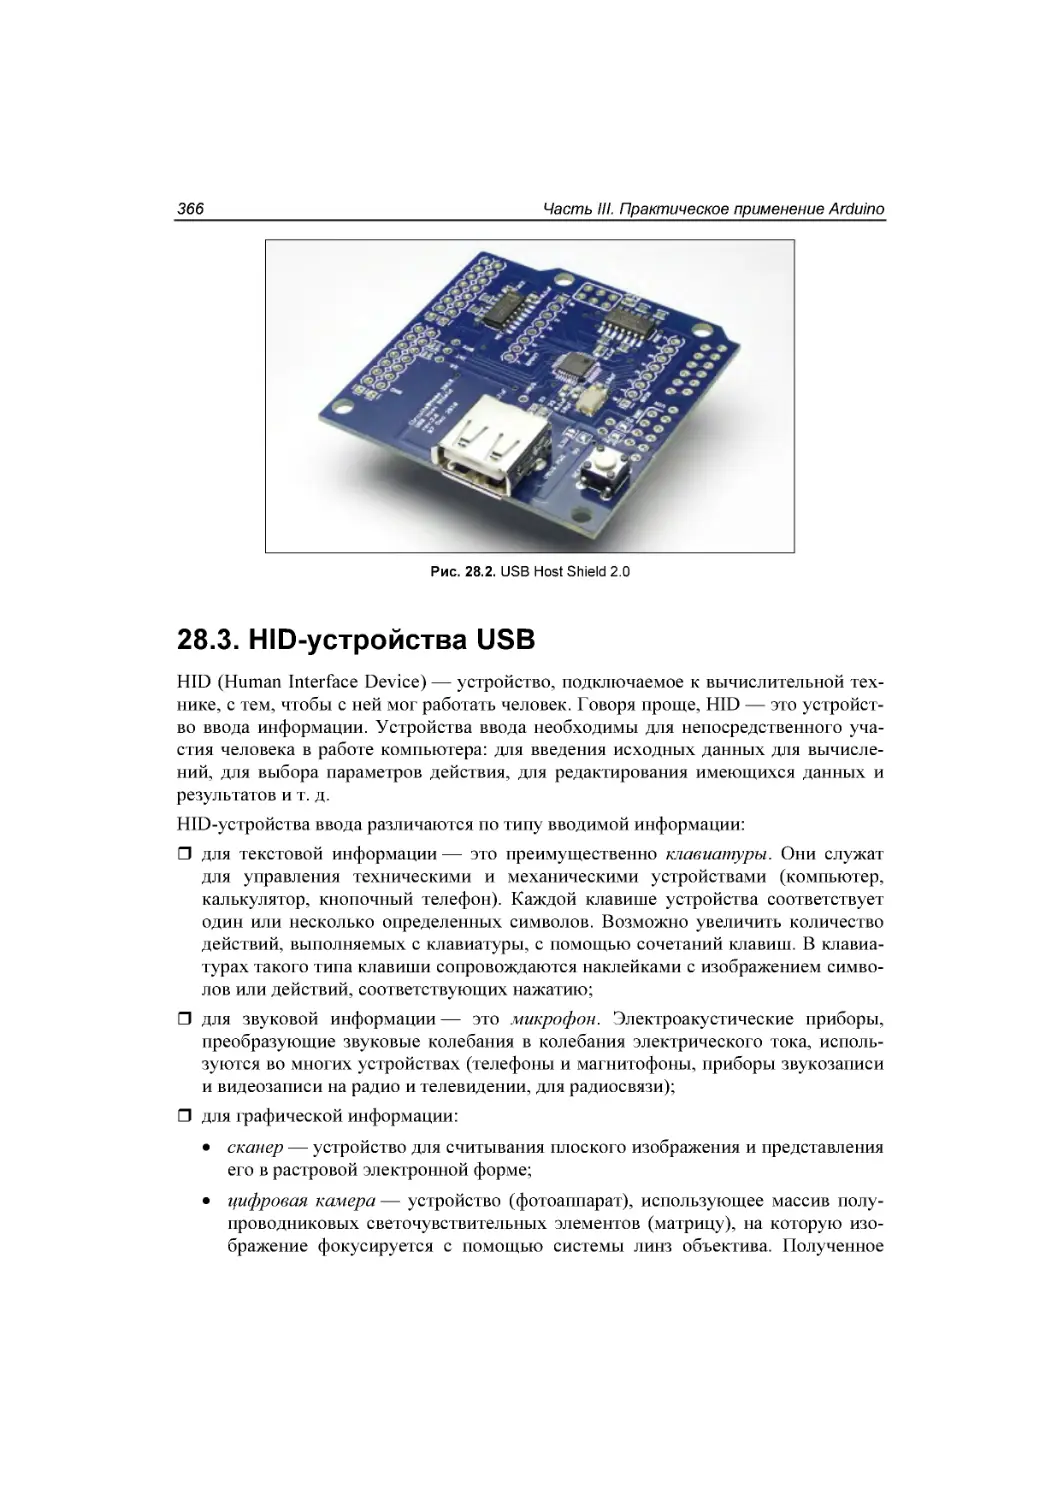 ﻿28.3. HID-устройства USB